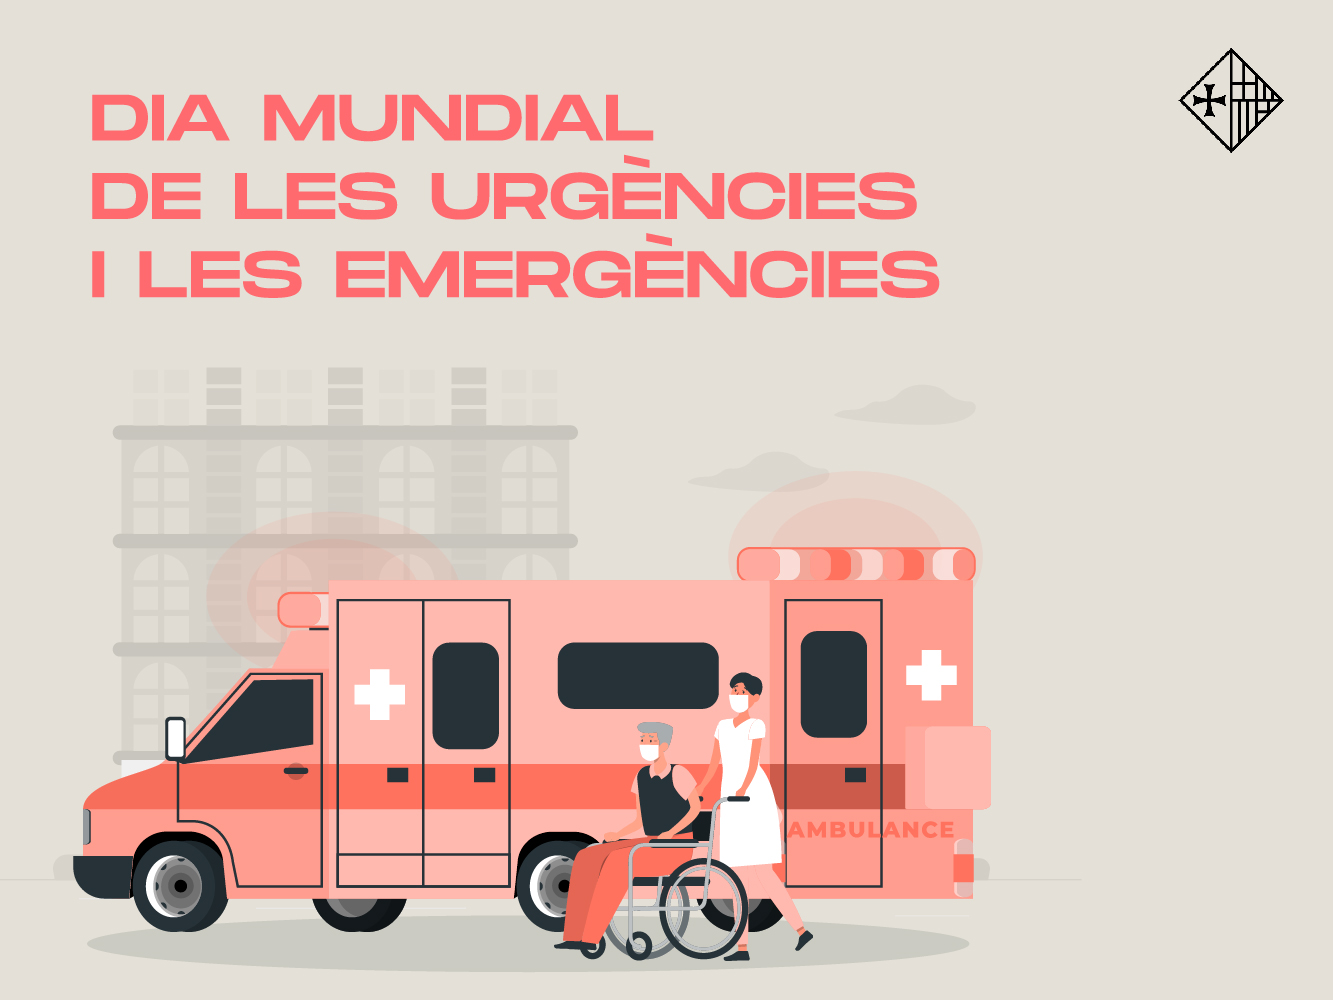 27 de maig – Dia Mundial de les Urgencies i les Emergències